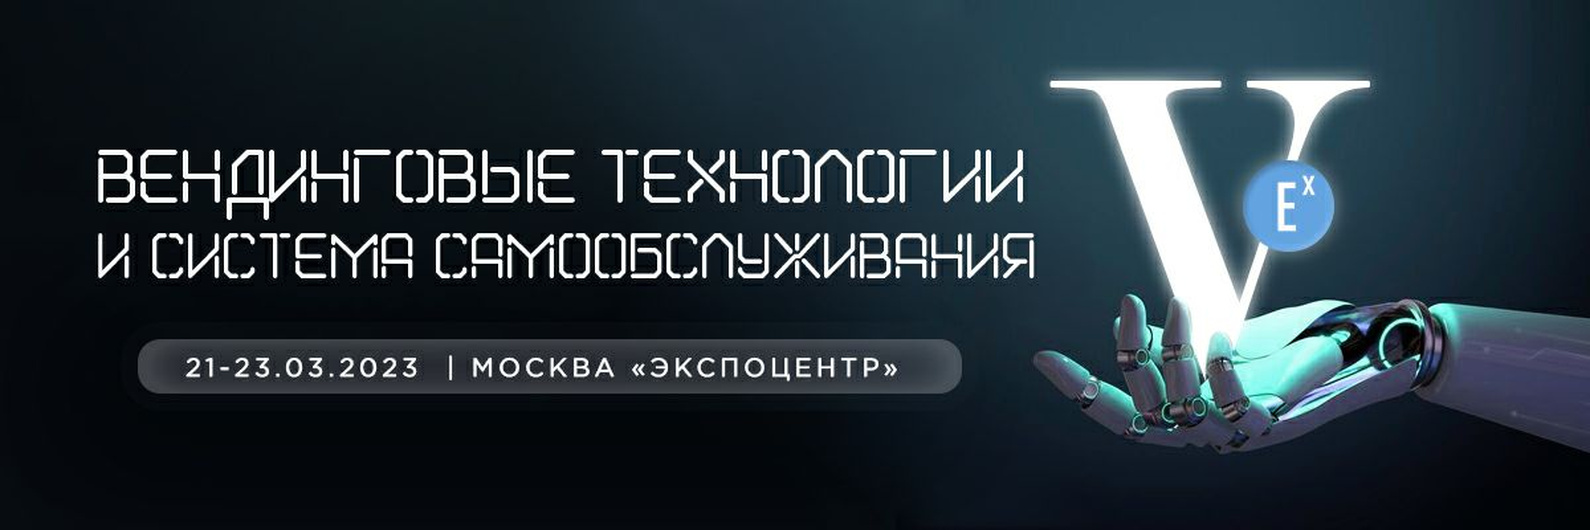 Выставка VendExpoWRS5 2023 21-23 марта в Москве